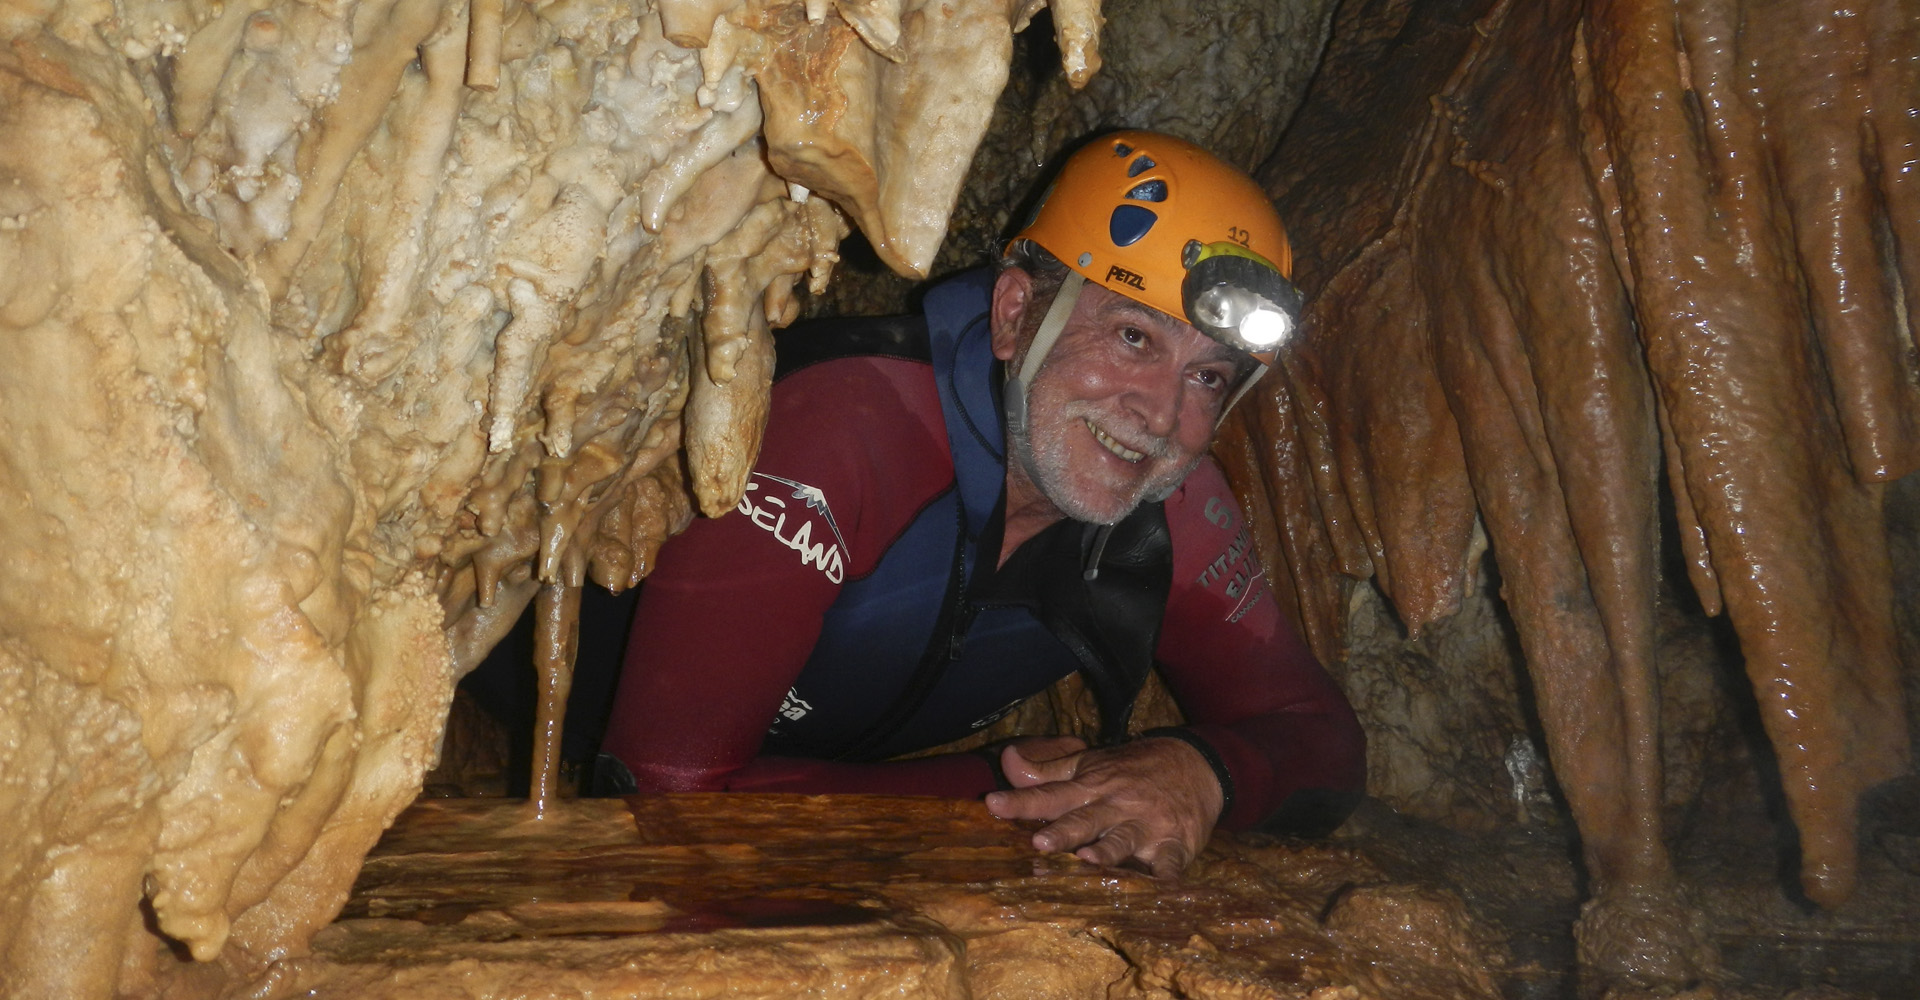 Cueva excentrica Malaga ,Espeleologia